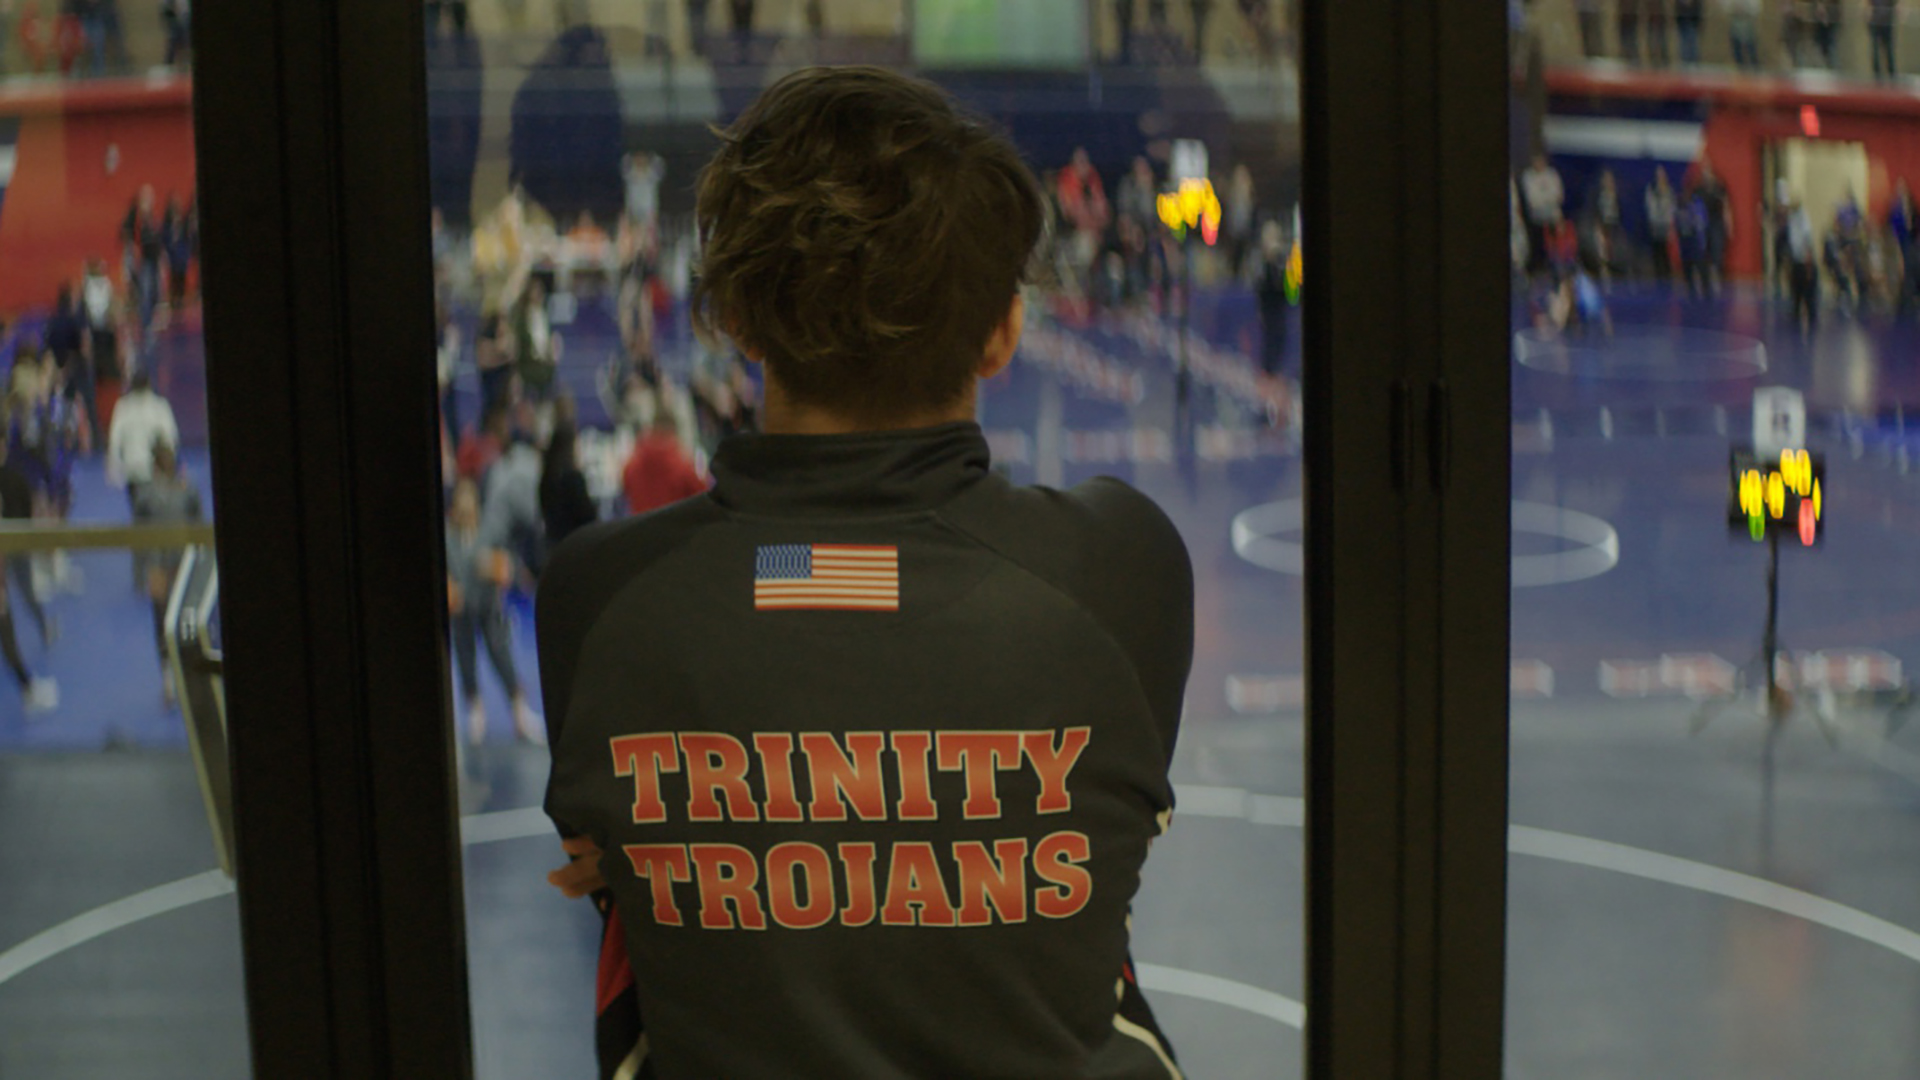 게임의 규칙 스틸컷2.성조기와 Triniy Trojans라는 문구가 있는 체육복을 입은 맥의 뒷모습. 맥은 관중들로 가득한 실내 체육관을 내려다보고 있다.